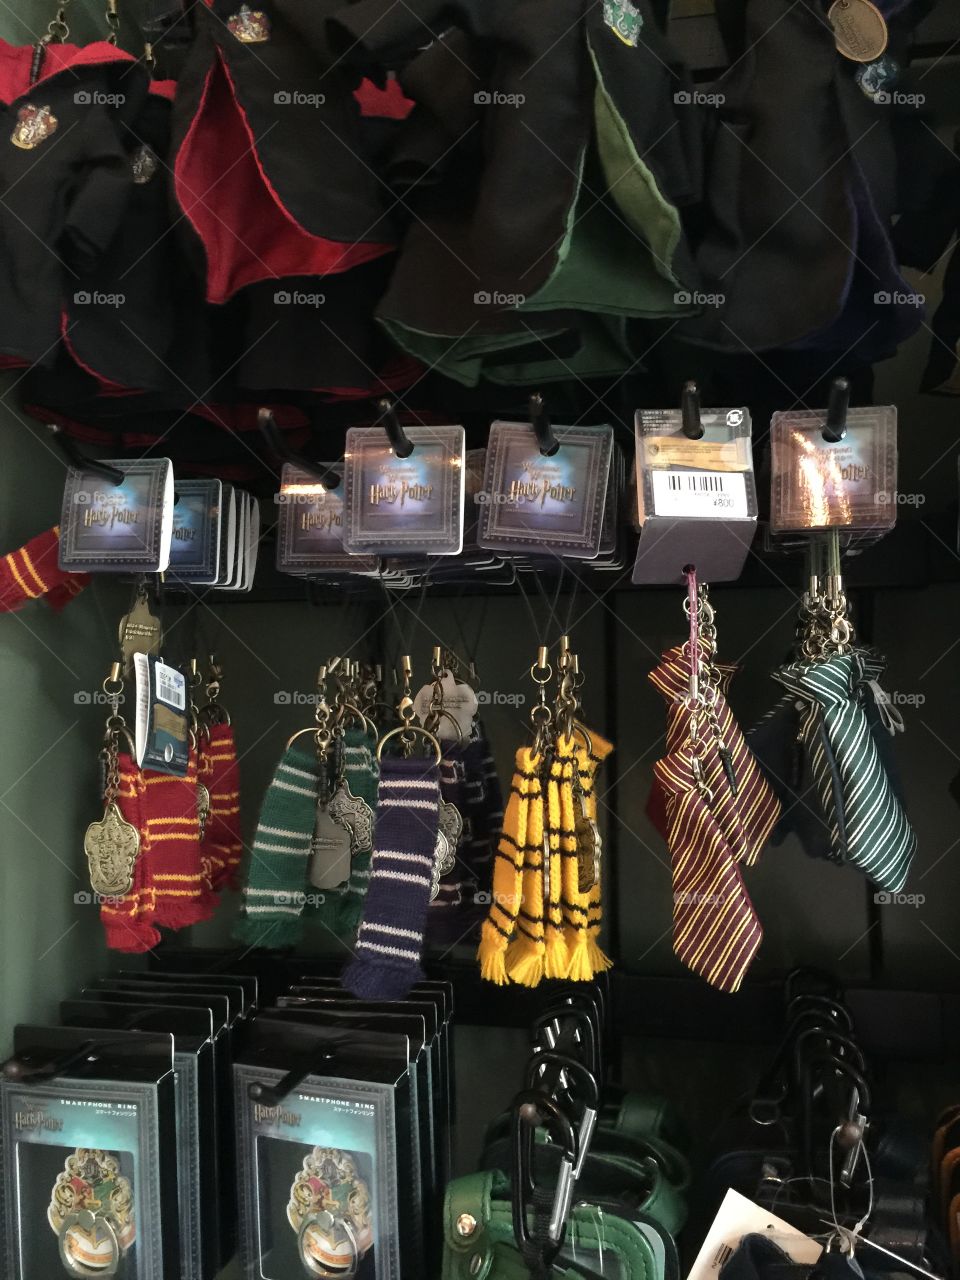 Harry Potter souvenirs